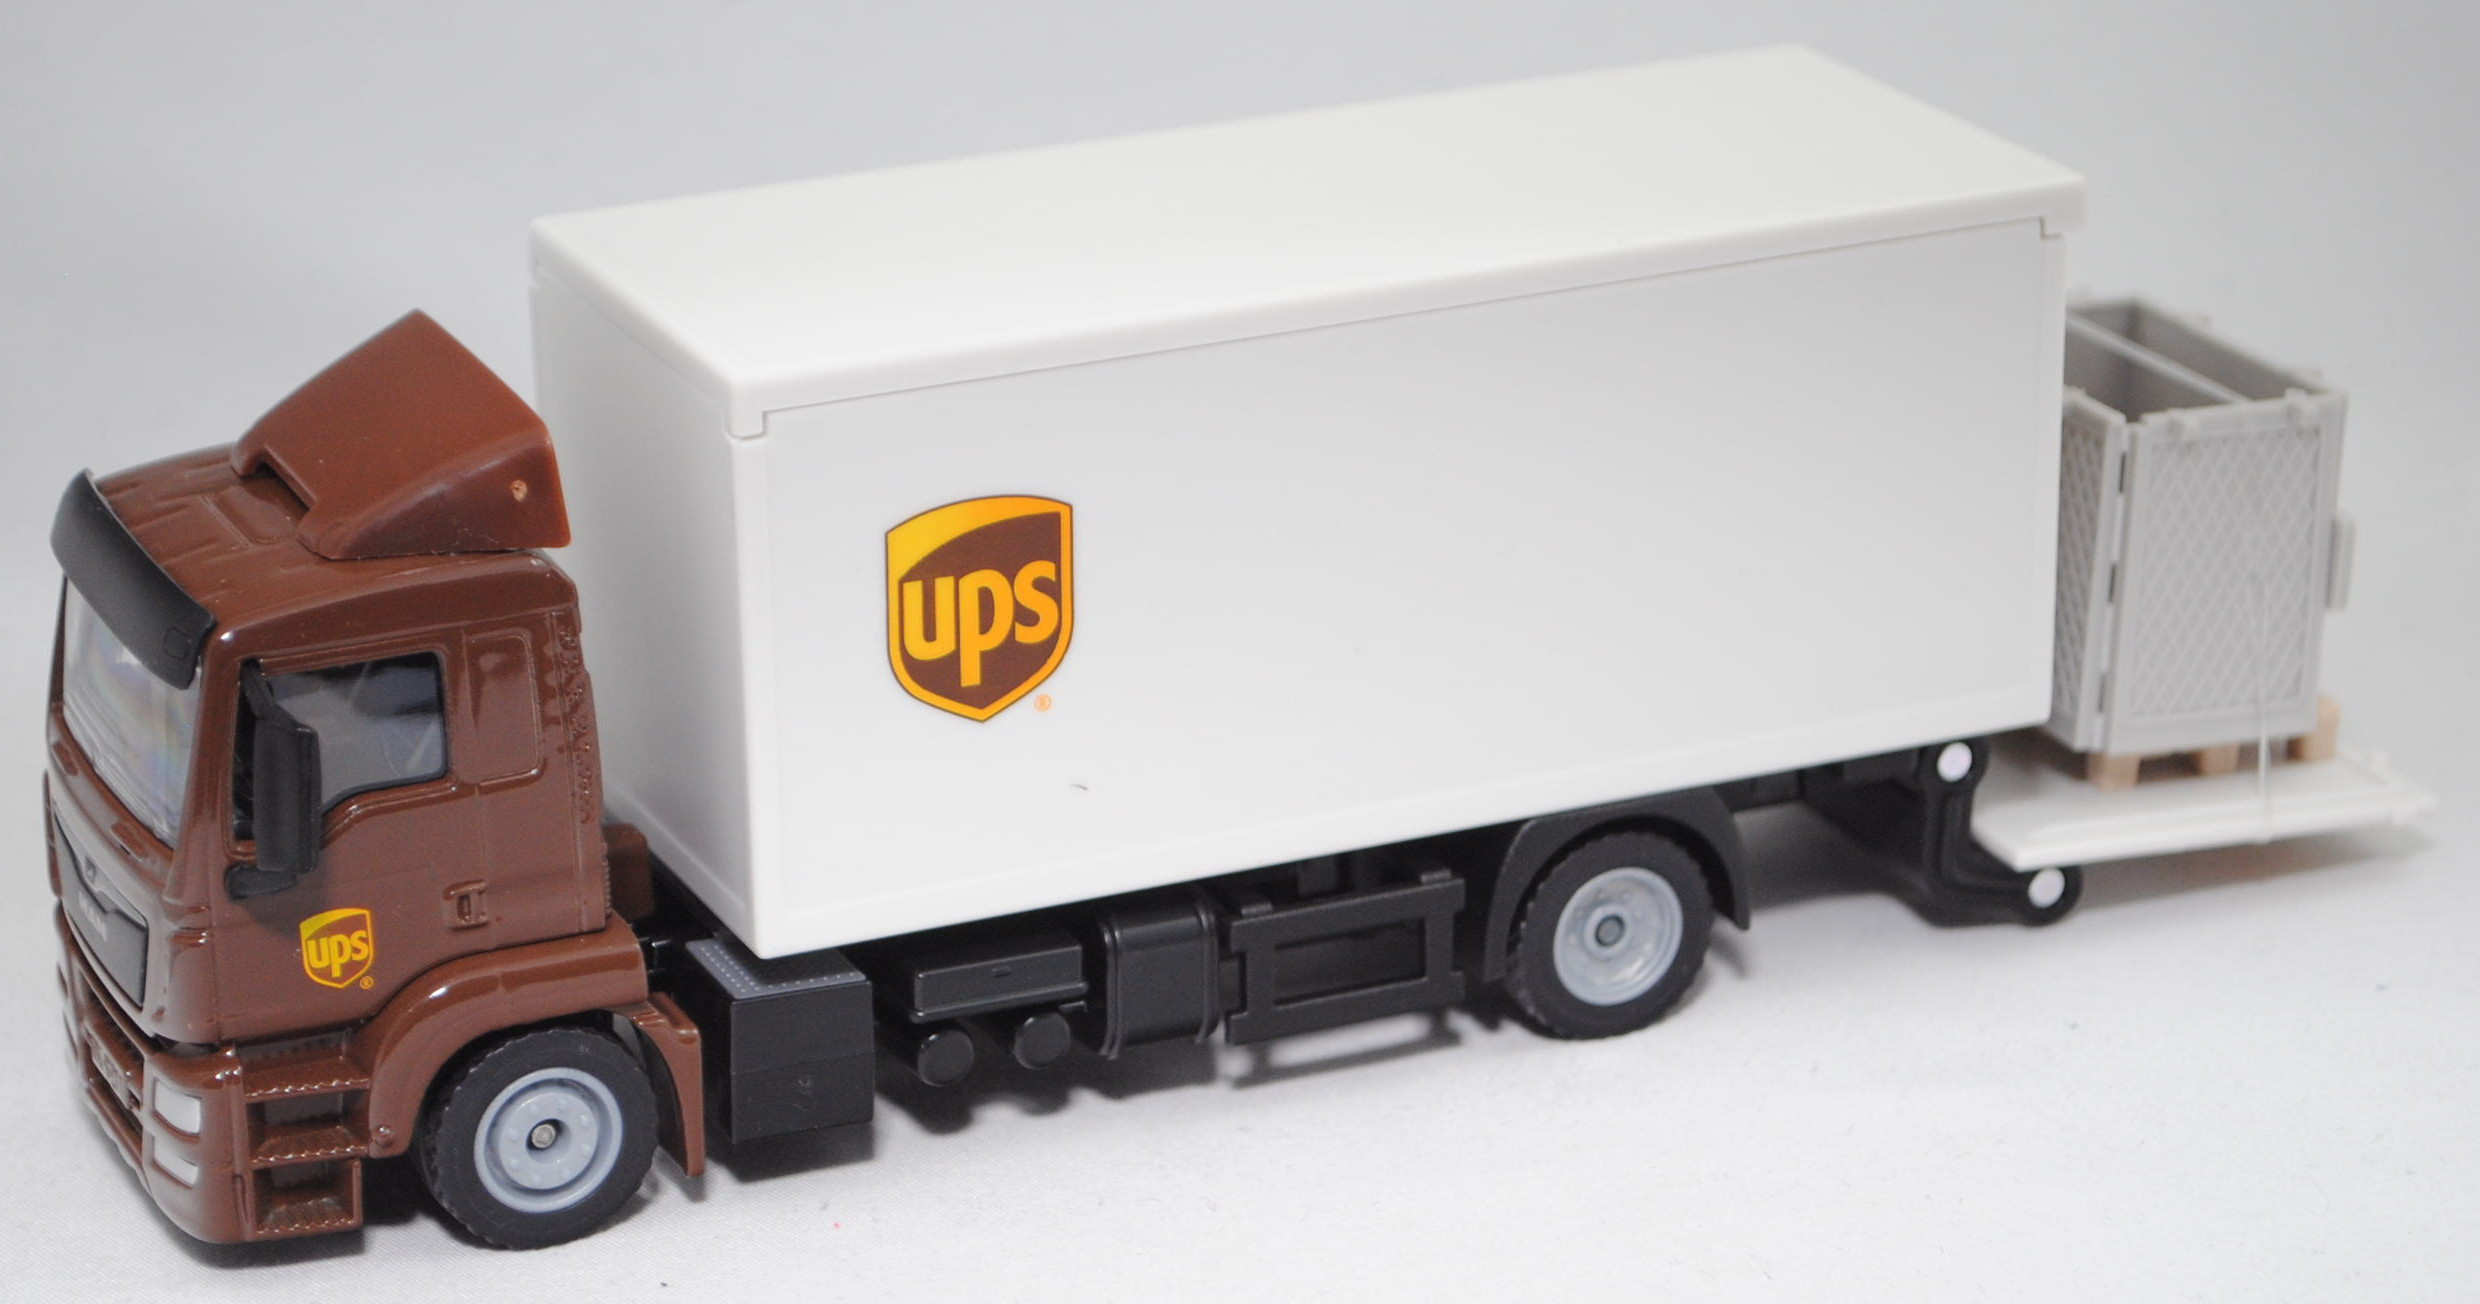 SIKU 1997 MAN Lastwagen UPS mit Kofferaufbau 1:50 